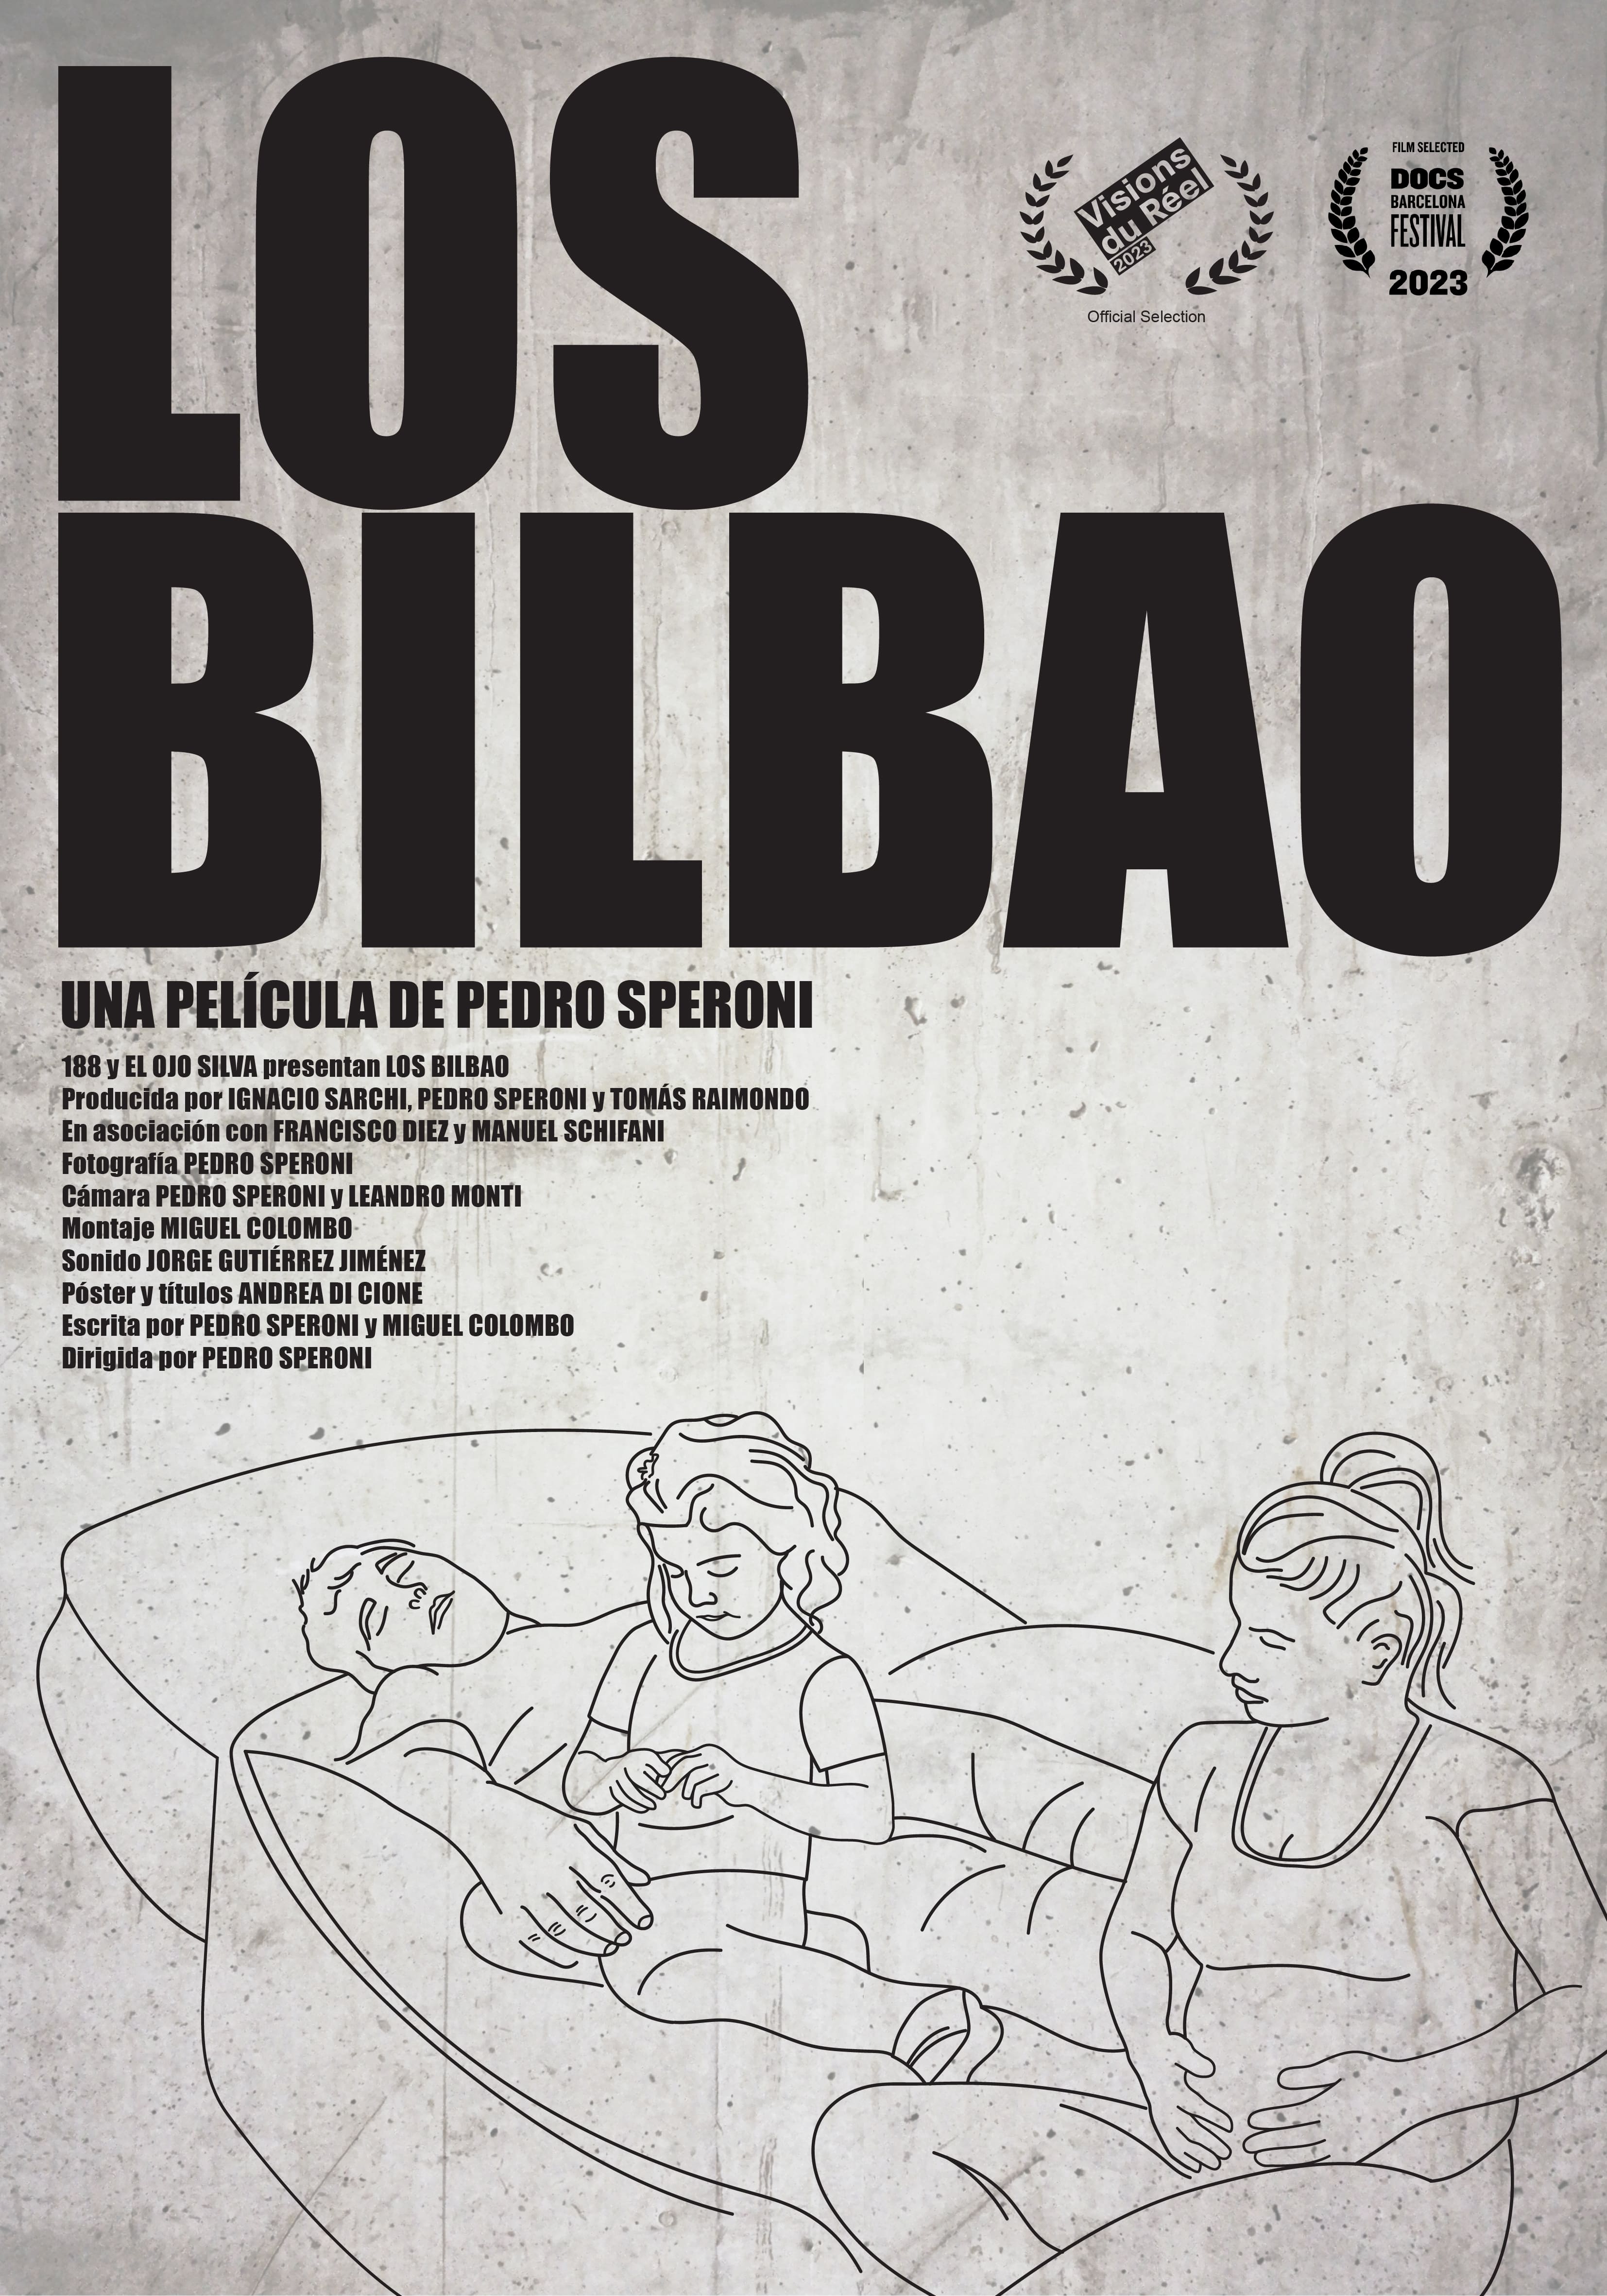 A Bilbao család